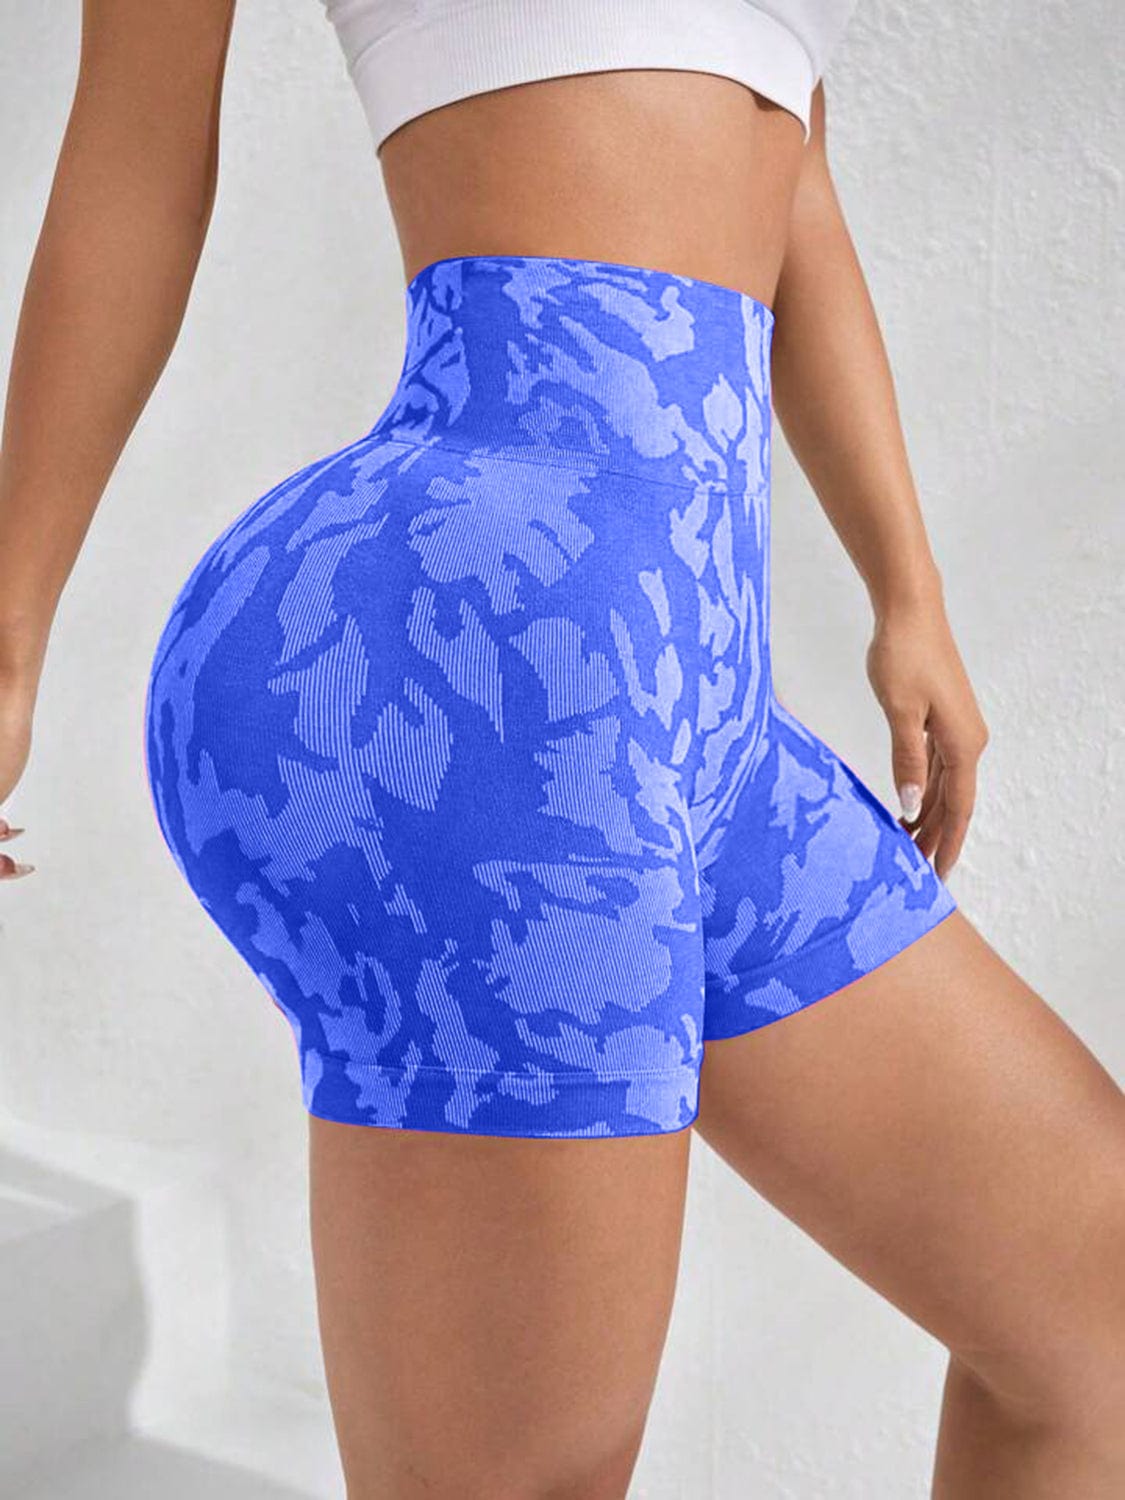 Trendsi ACTIVE SHORTS Royal  Blue / S Printed High Waist Active Shorts